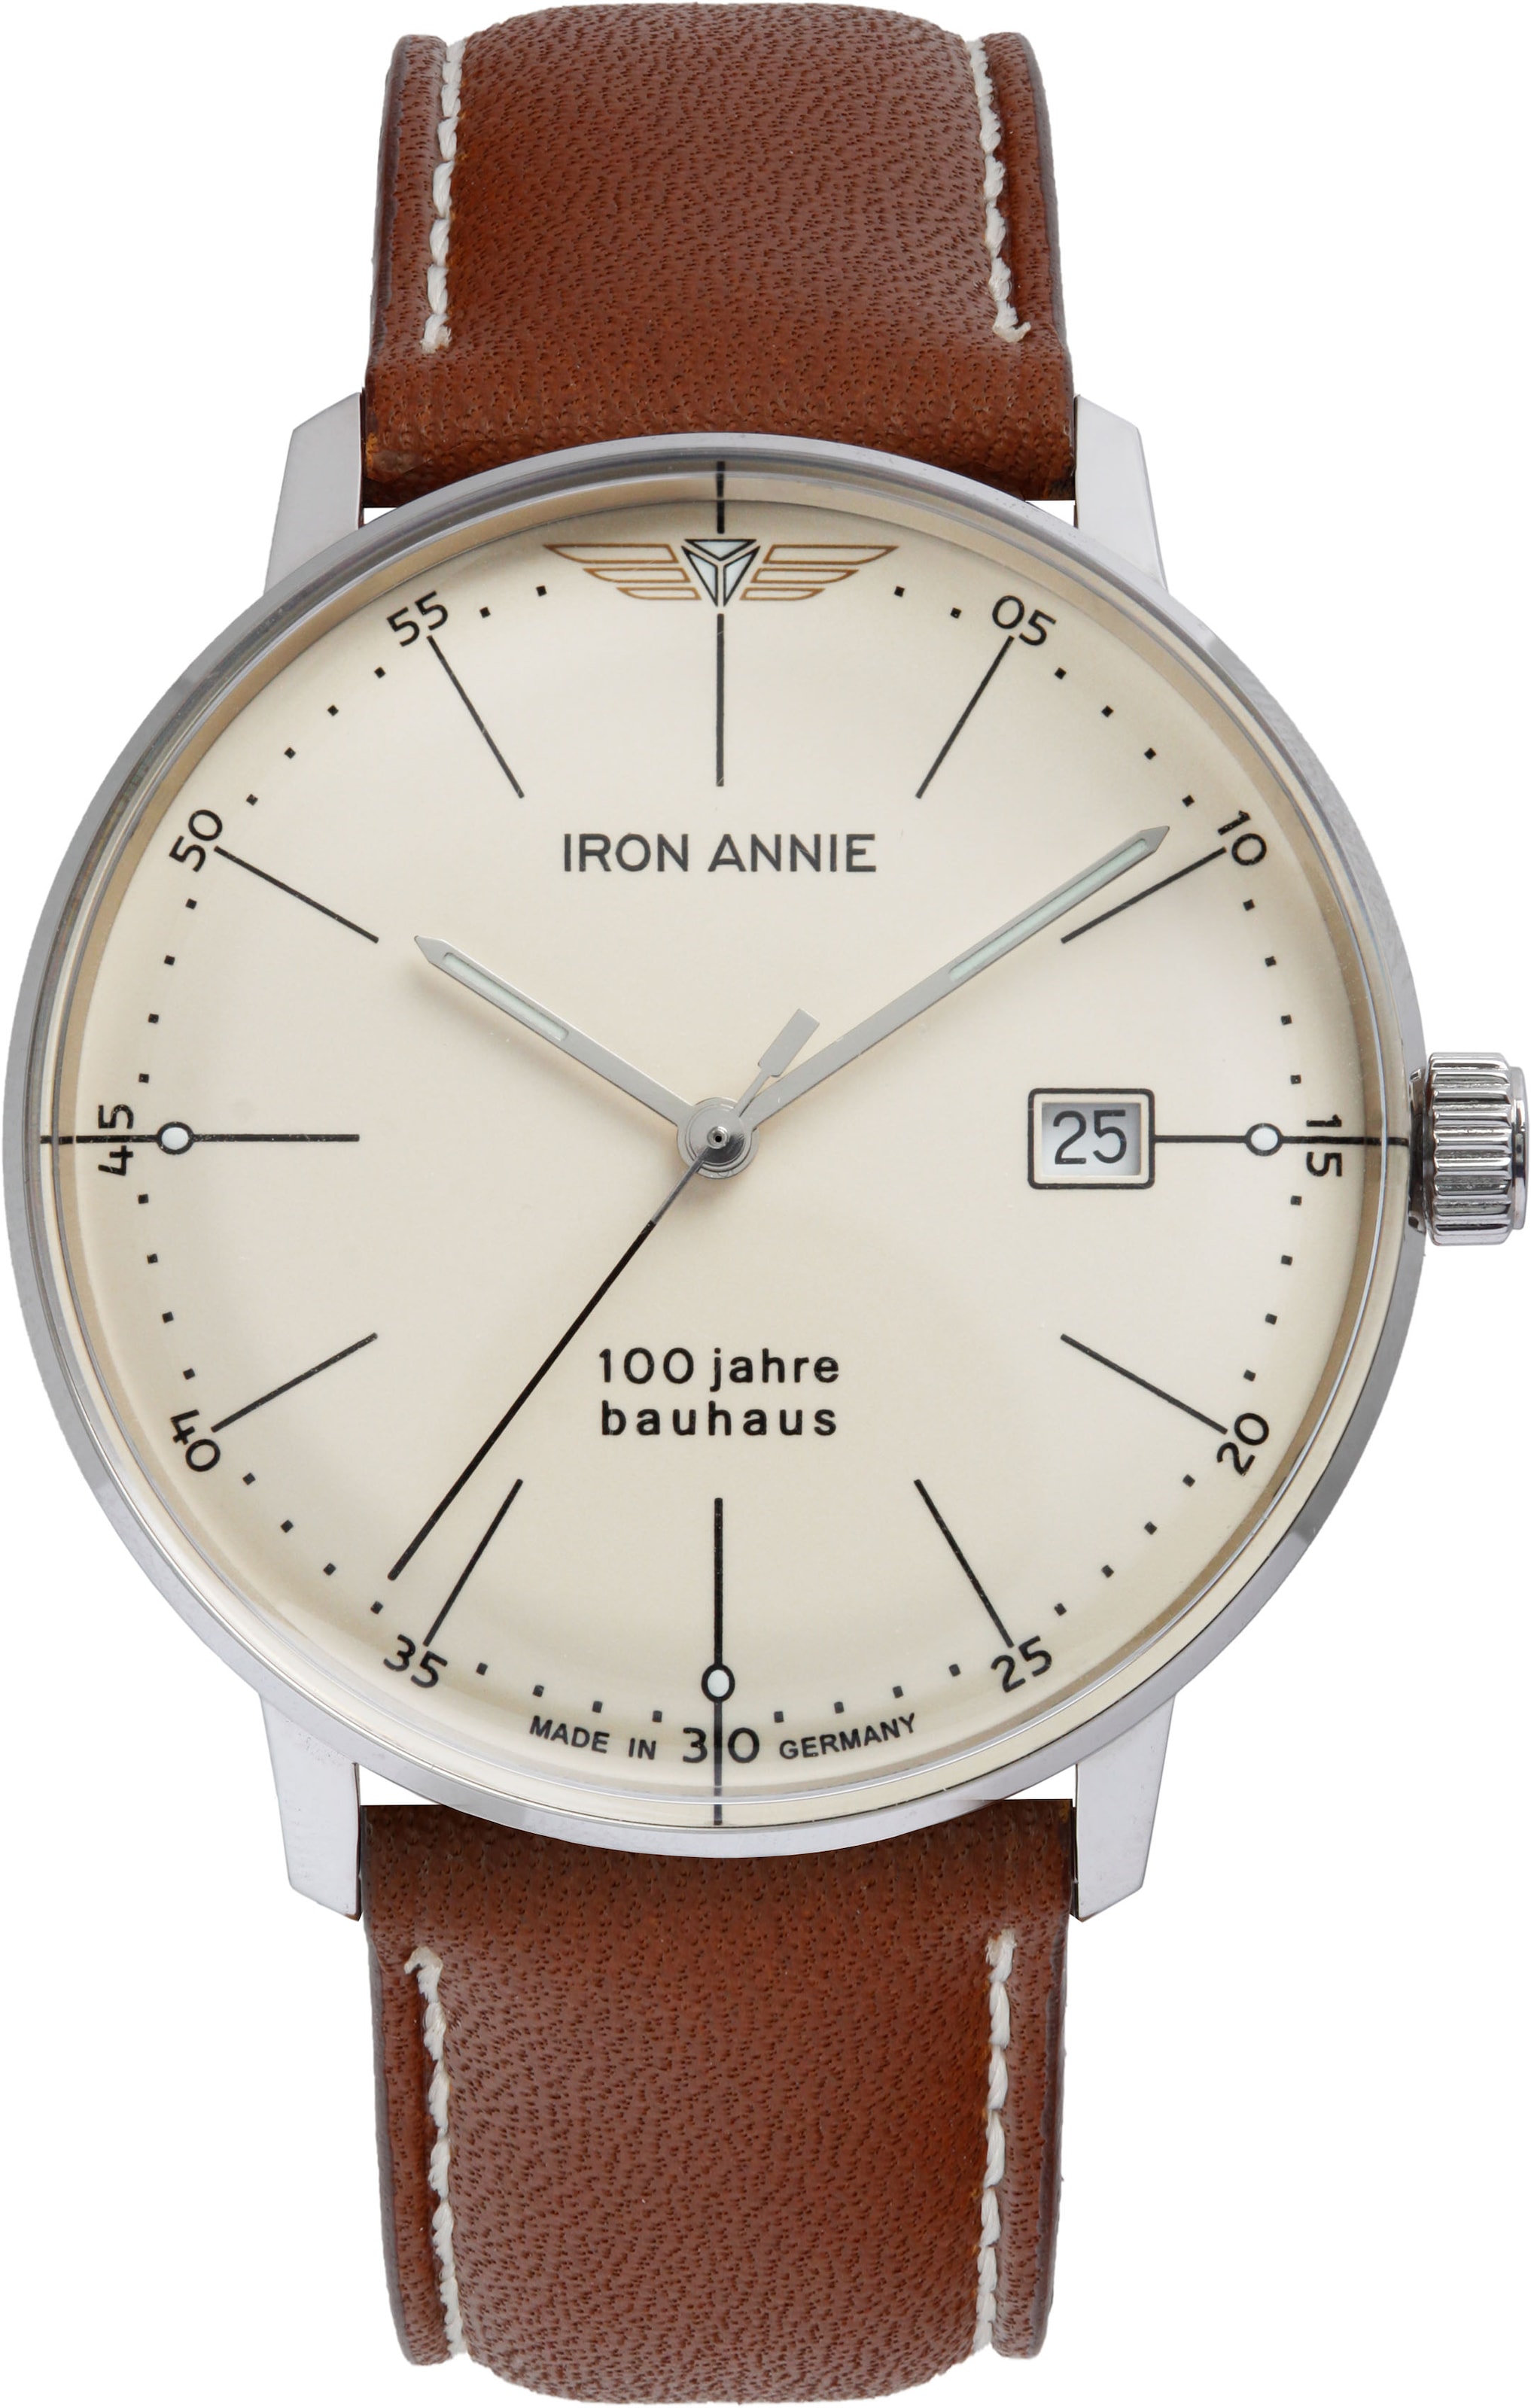 IRON ANNIE Quarzuhr »Bauhaus 100 Jahre, 5070-5_Air«, Armbanduhr, Herrenuhr, Datum, Leuchtzeiger, Made in Germany